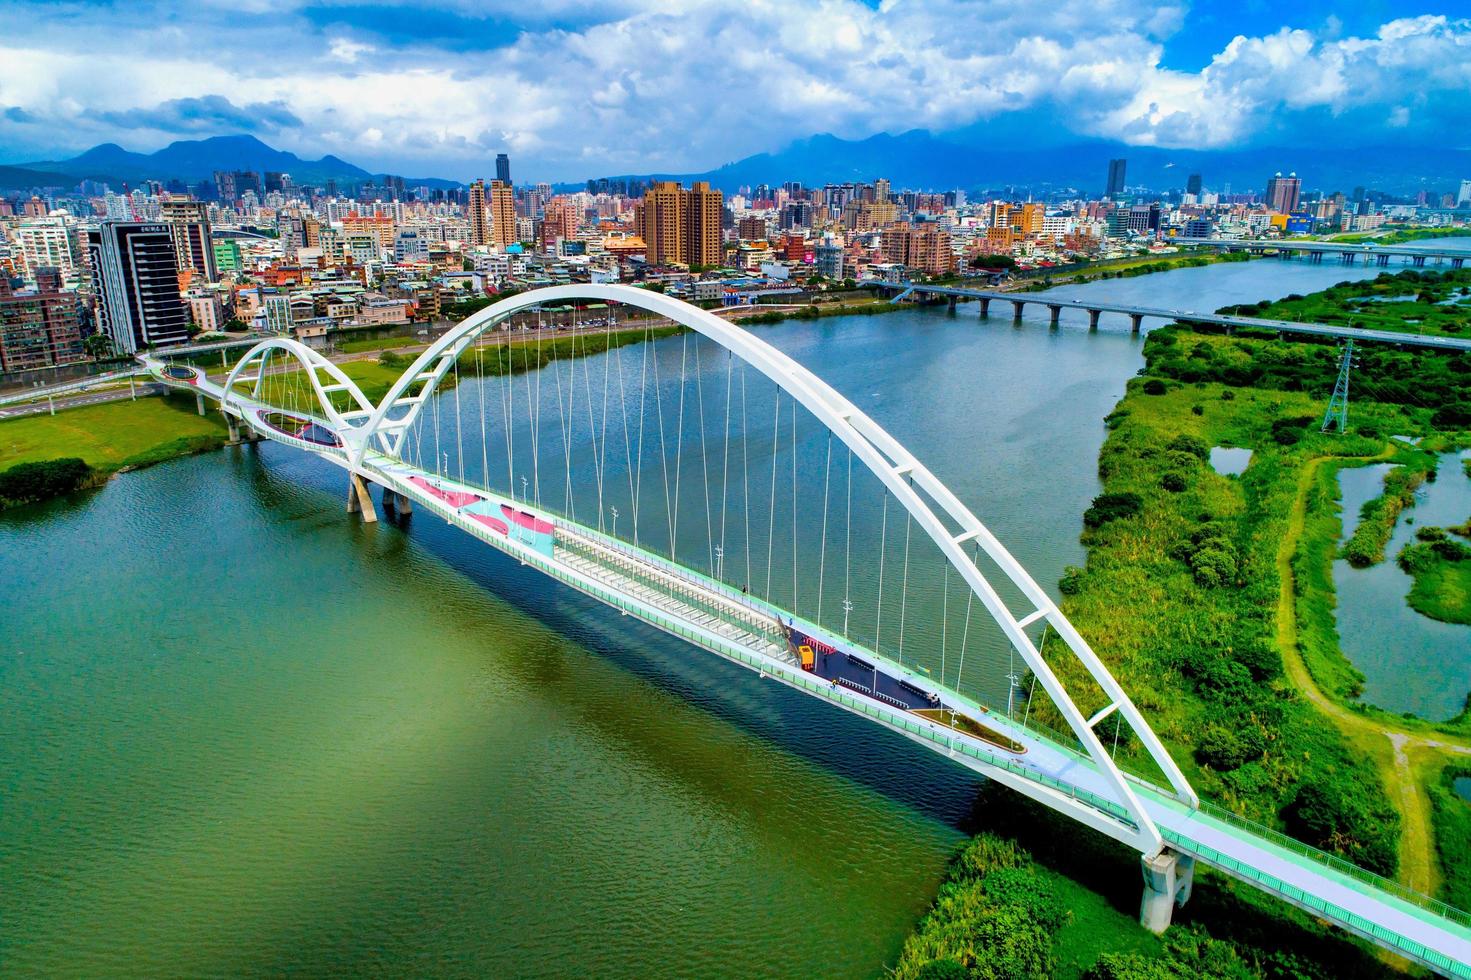 nieuwe stad in taipei, taiwan, 11 juli 2018 - luchtfoto van een brug foto